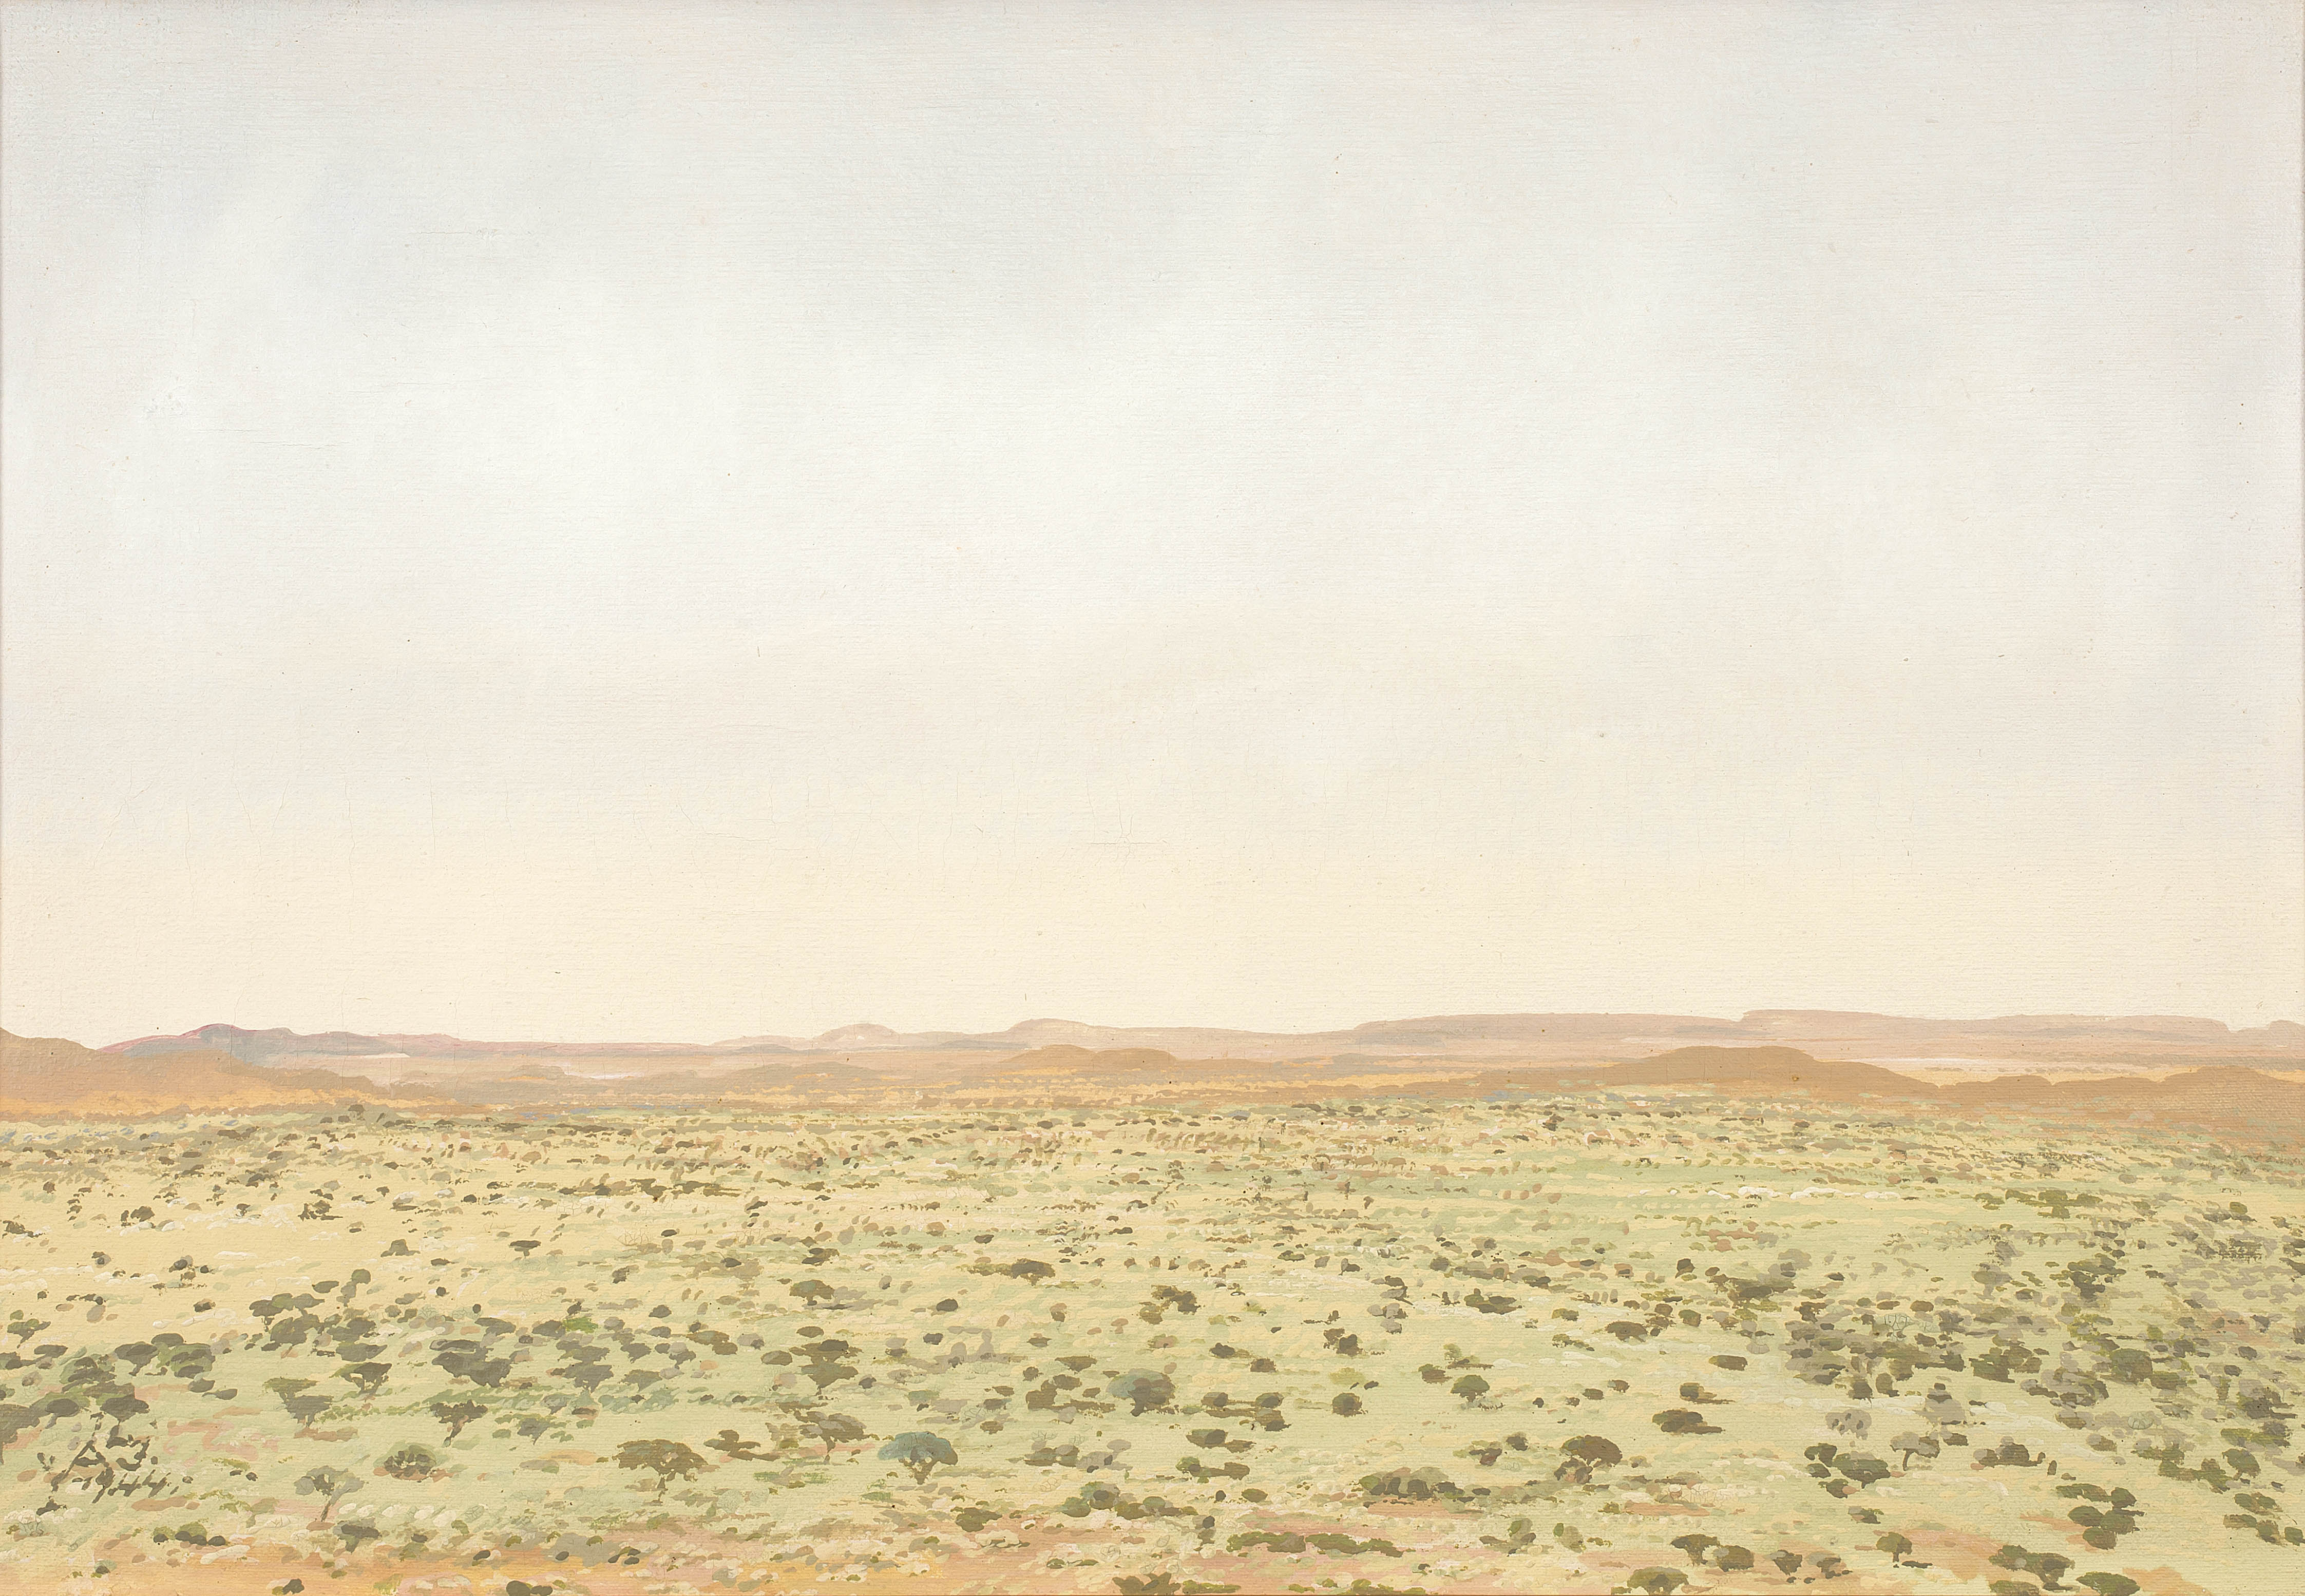 Adolph Jentsch; An Extensive Namibian Landscape